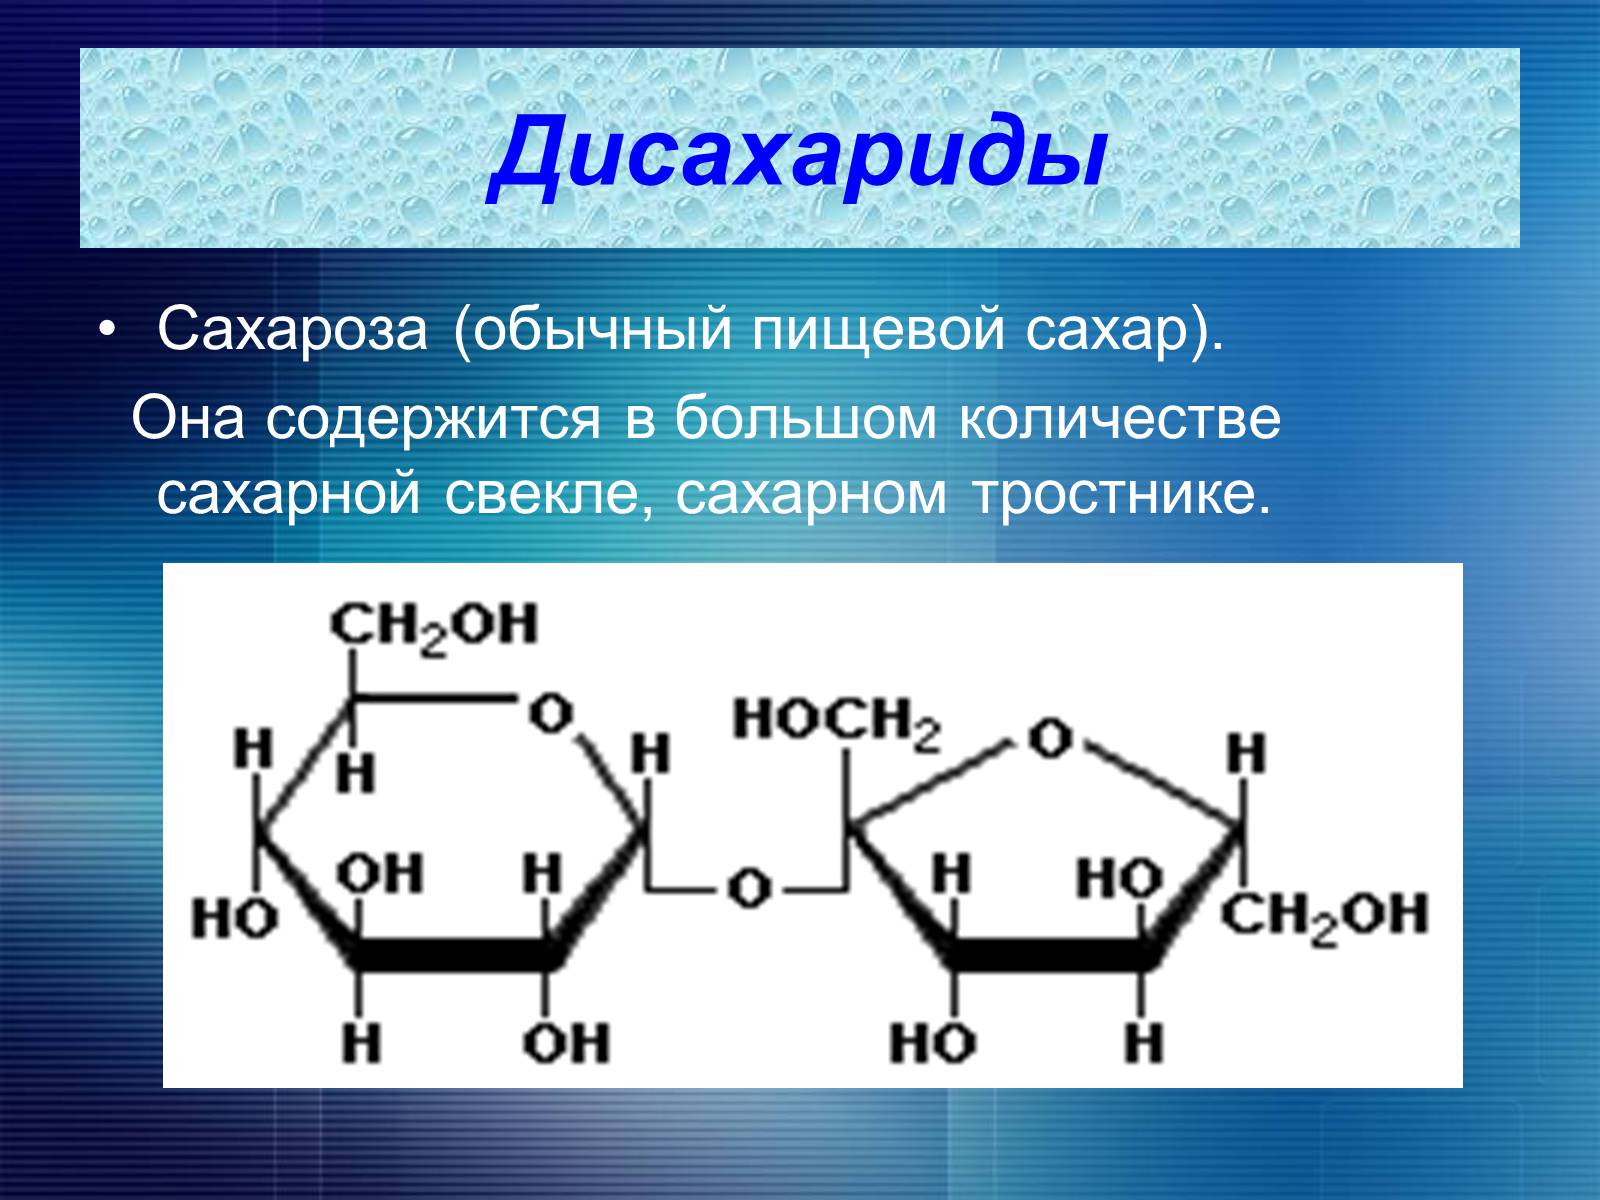 Сахарный тростник формула. Лактоза дисахарид. Дисахариды мальтоза лактоза сахароза. Аномеры дисахаридов. Строение сахарозы мальтозы и лактозы.